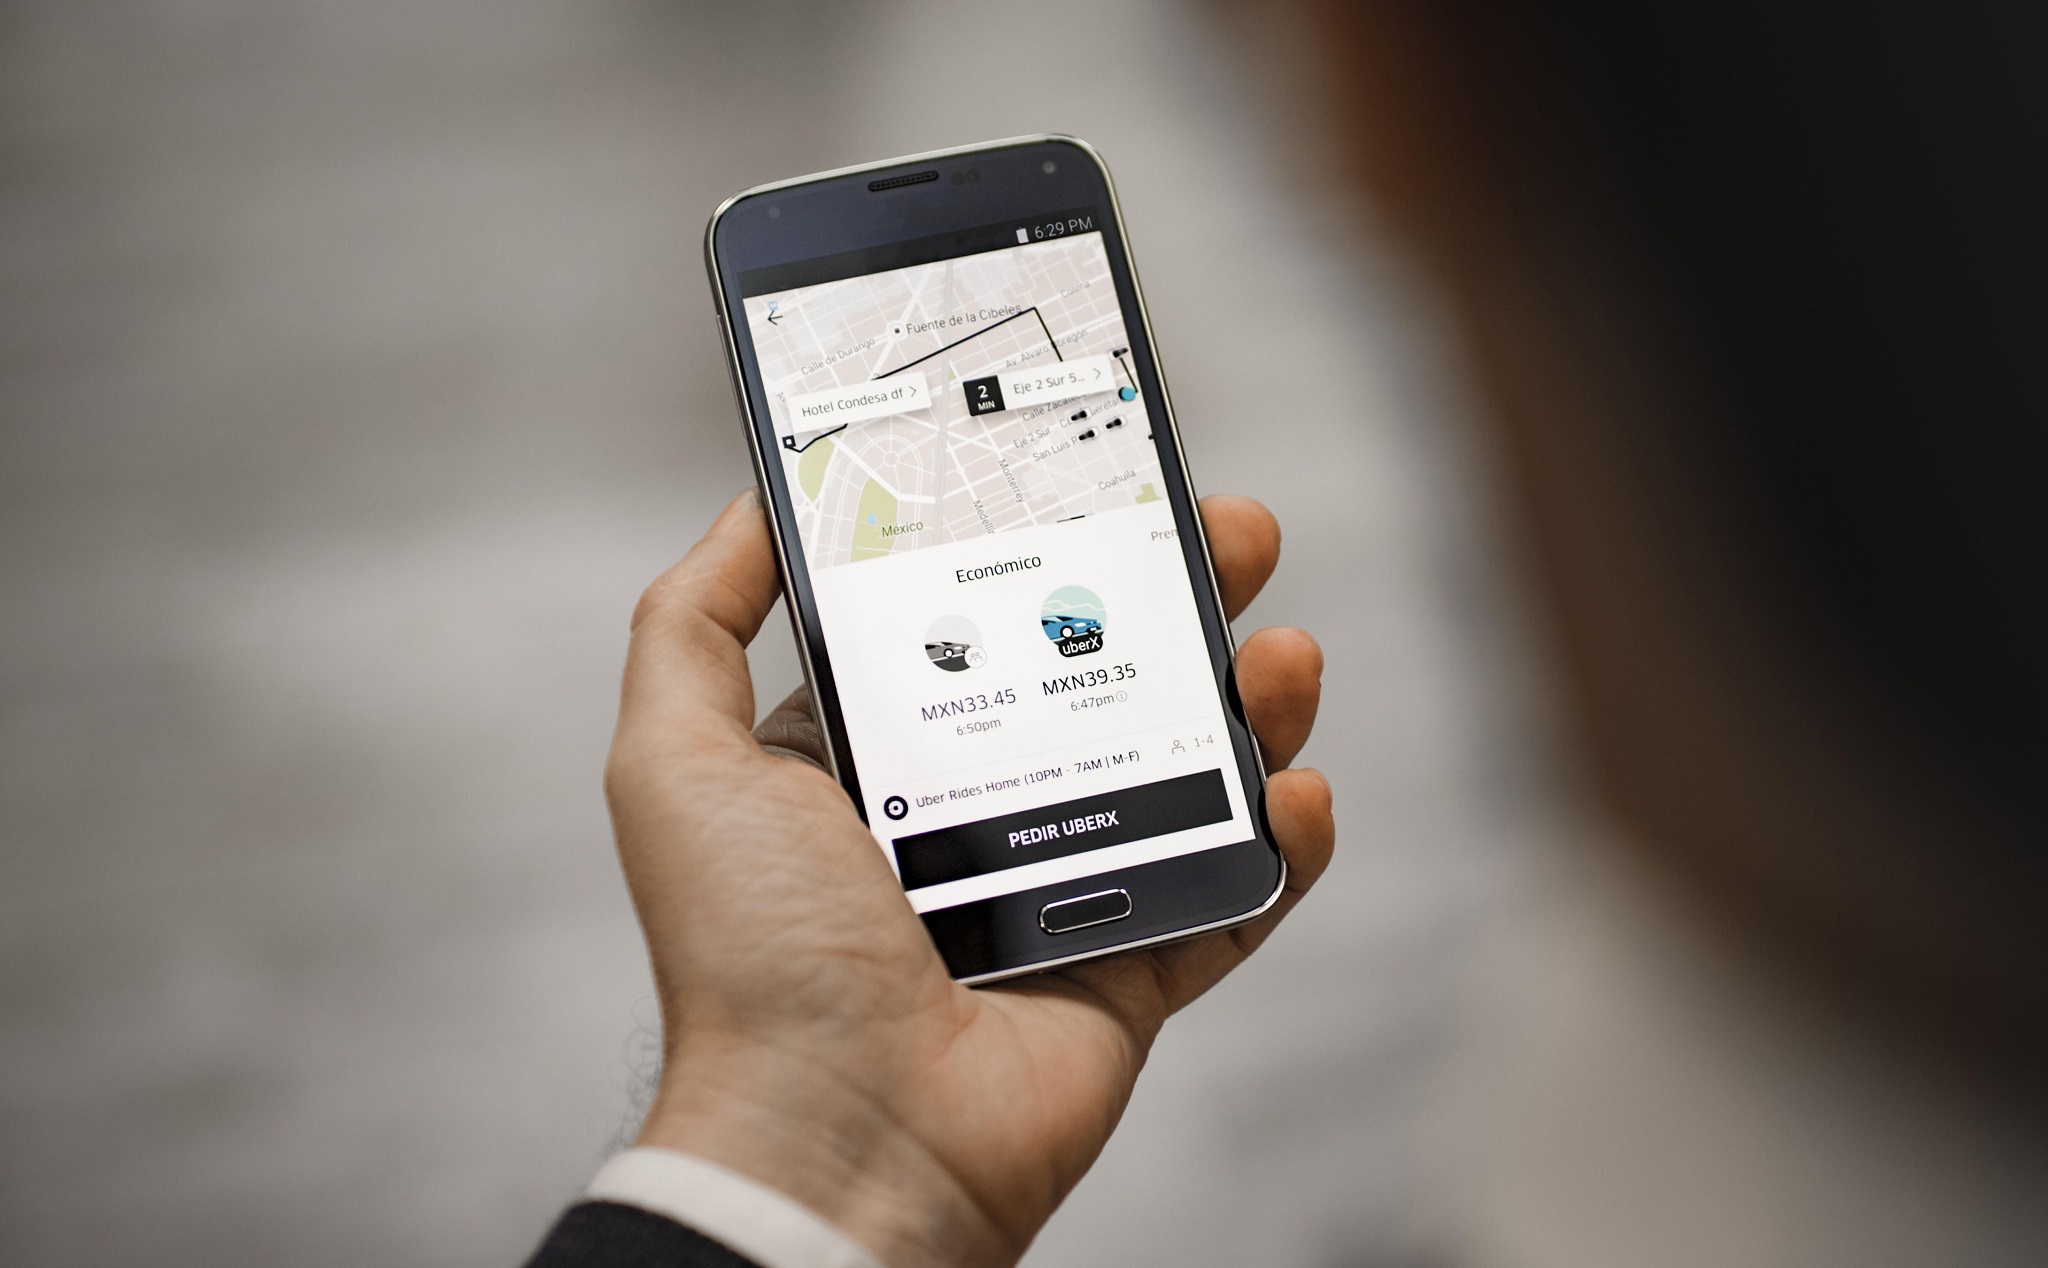 New York công nhận 3 lái xe là nhân viên thuộc Uber